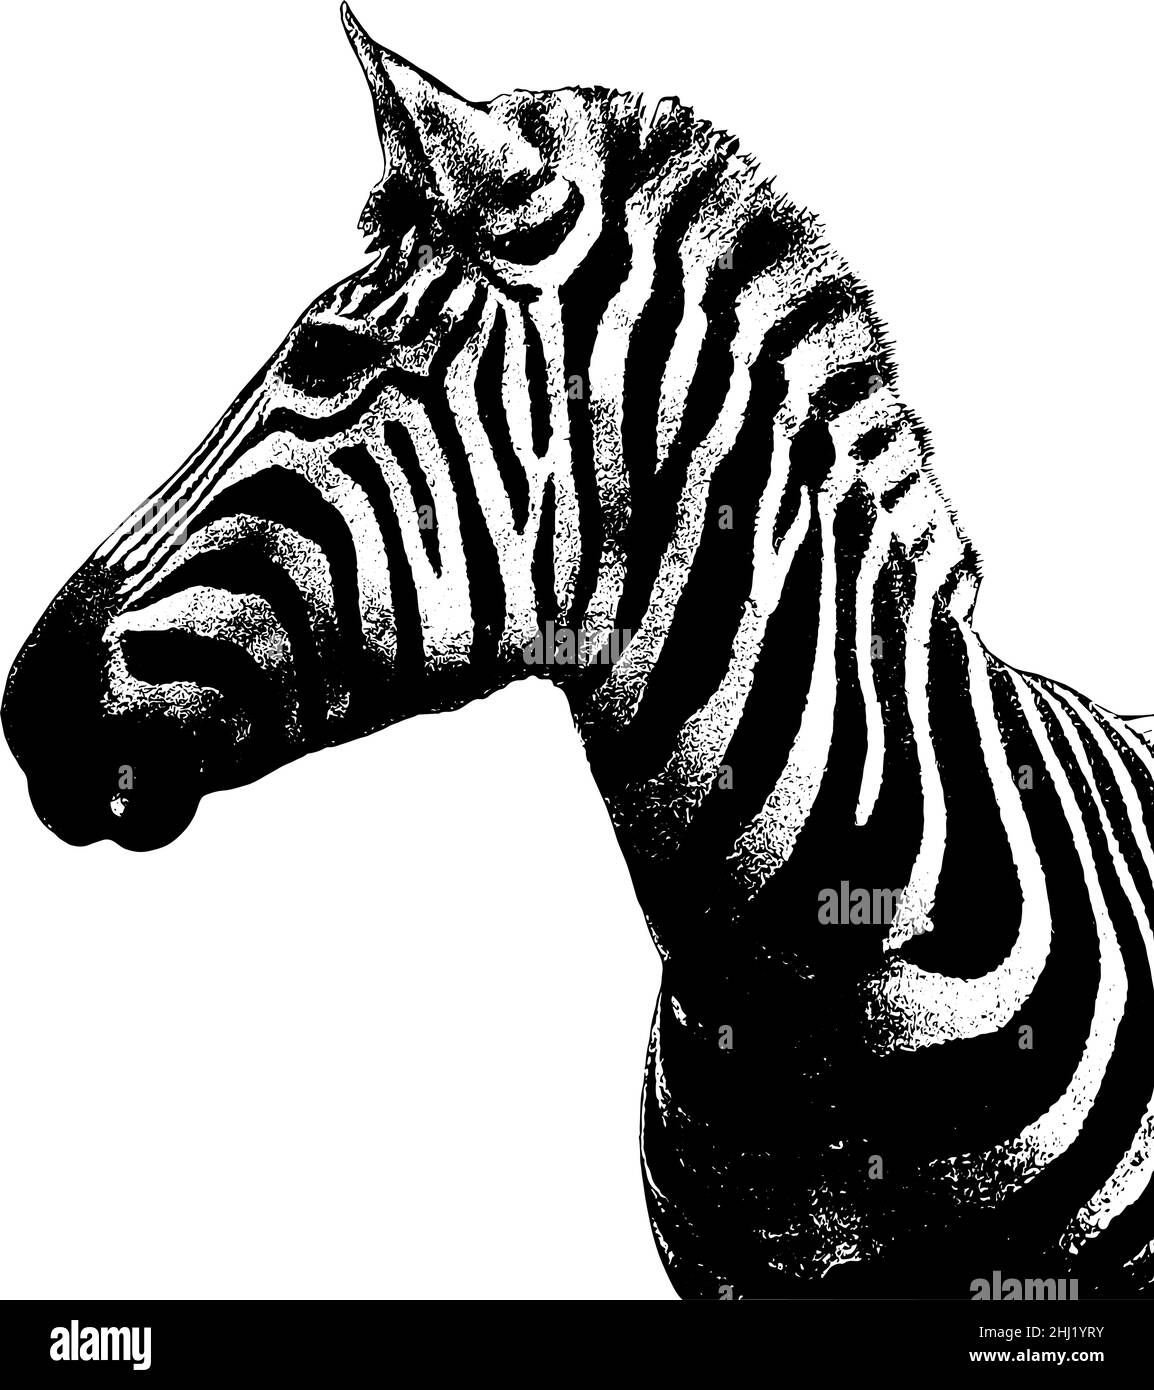 Zebra-Profilansicht der Kopfdarstellung in Schwarz auf weißem Hintergrund Stock Vektor